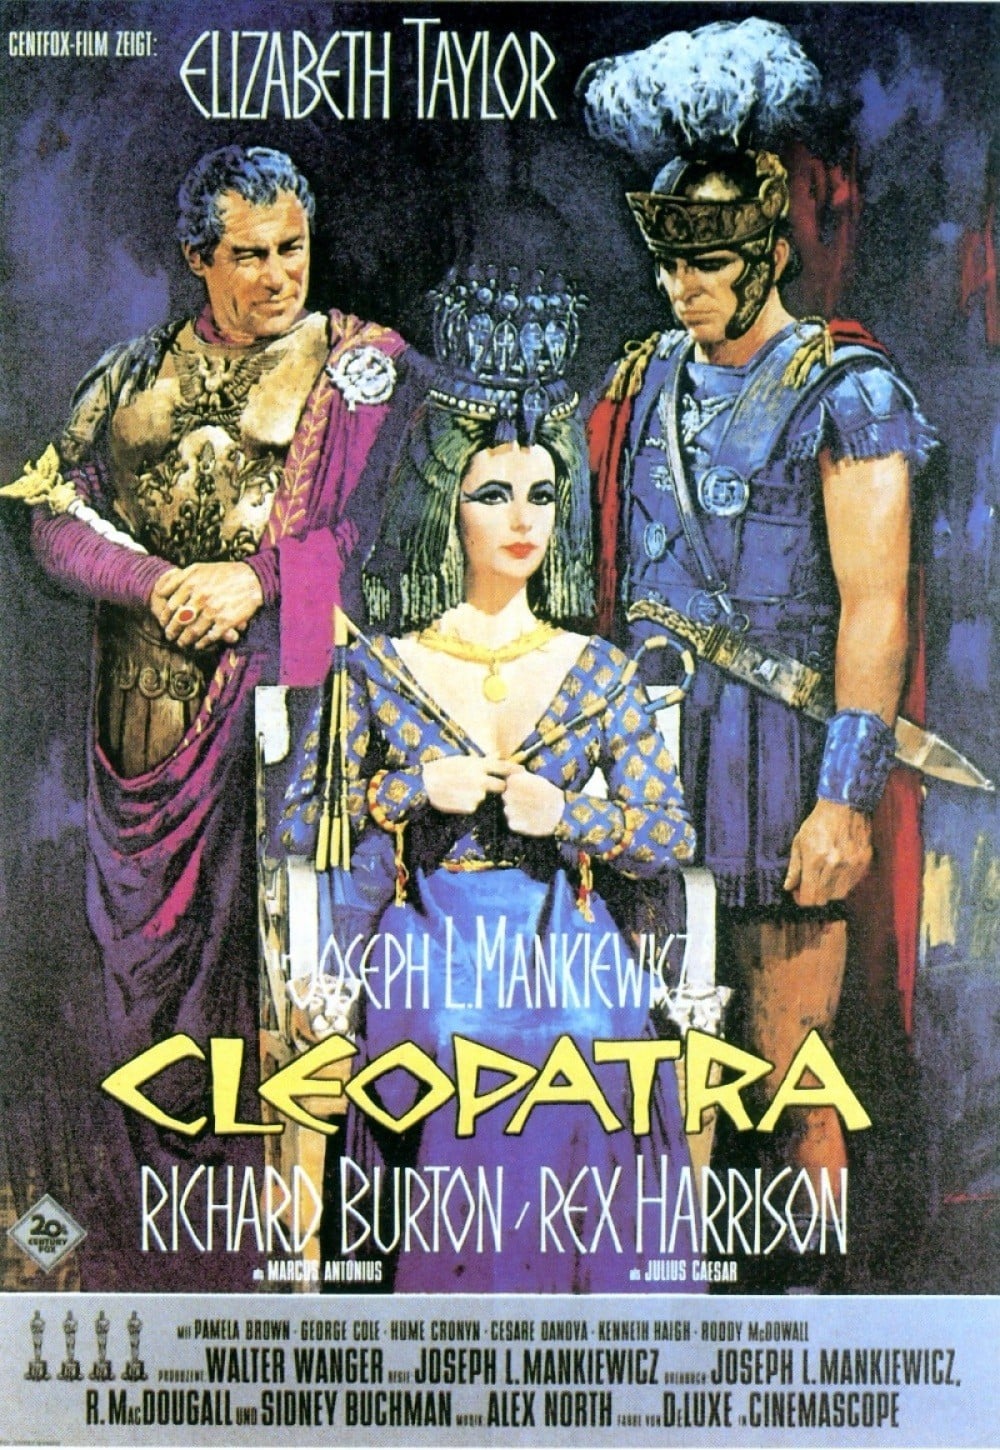 Plakat von "Cleopatra"